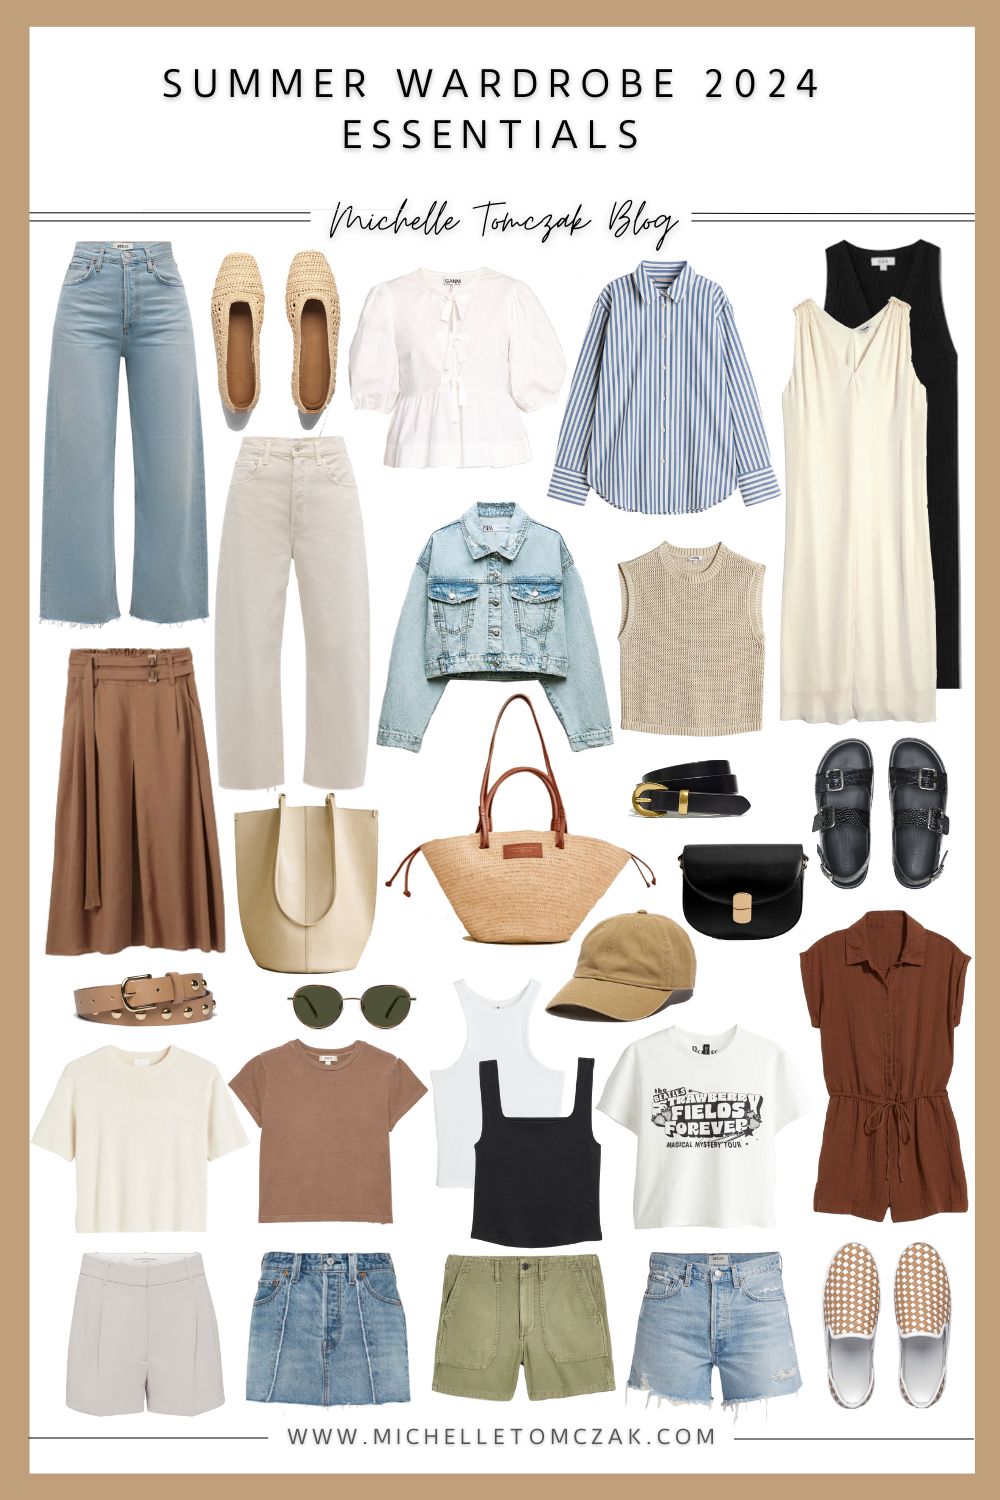 Summer Wardrobe Essentials 2024 - Michelle Tomczak